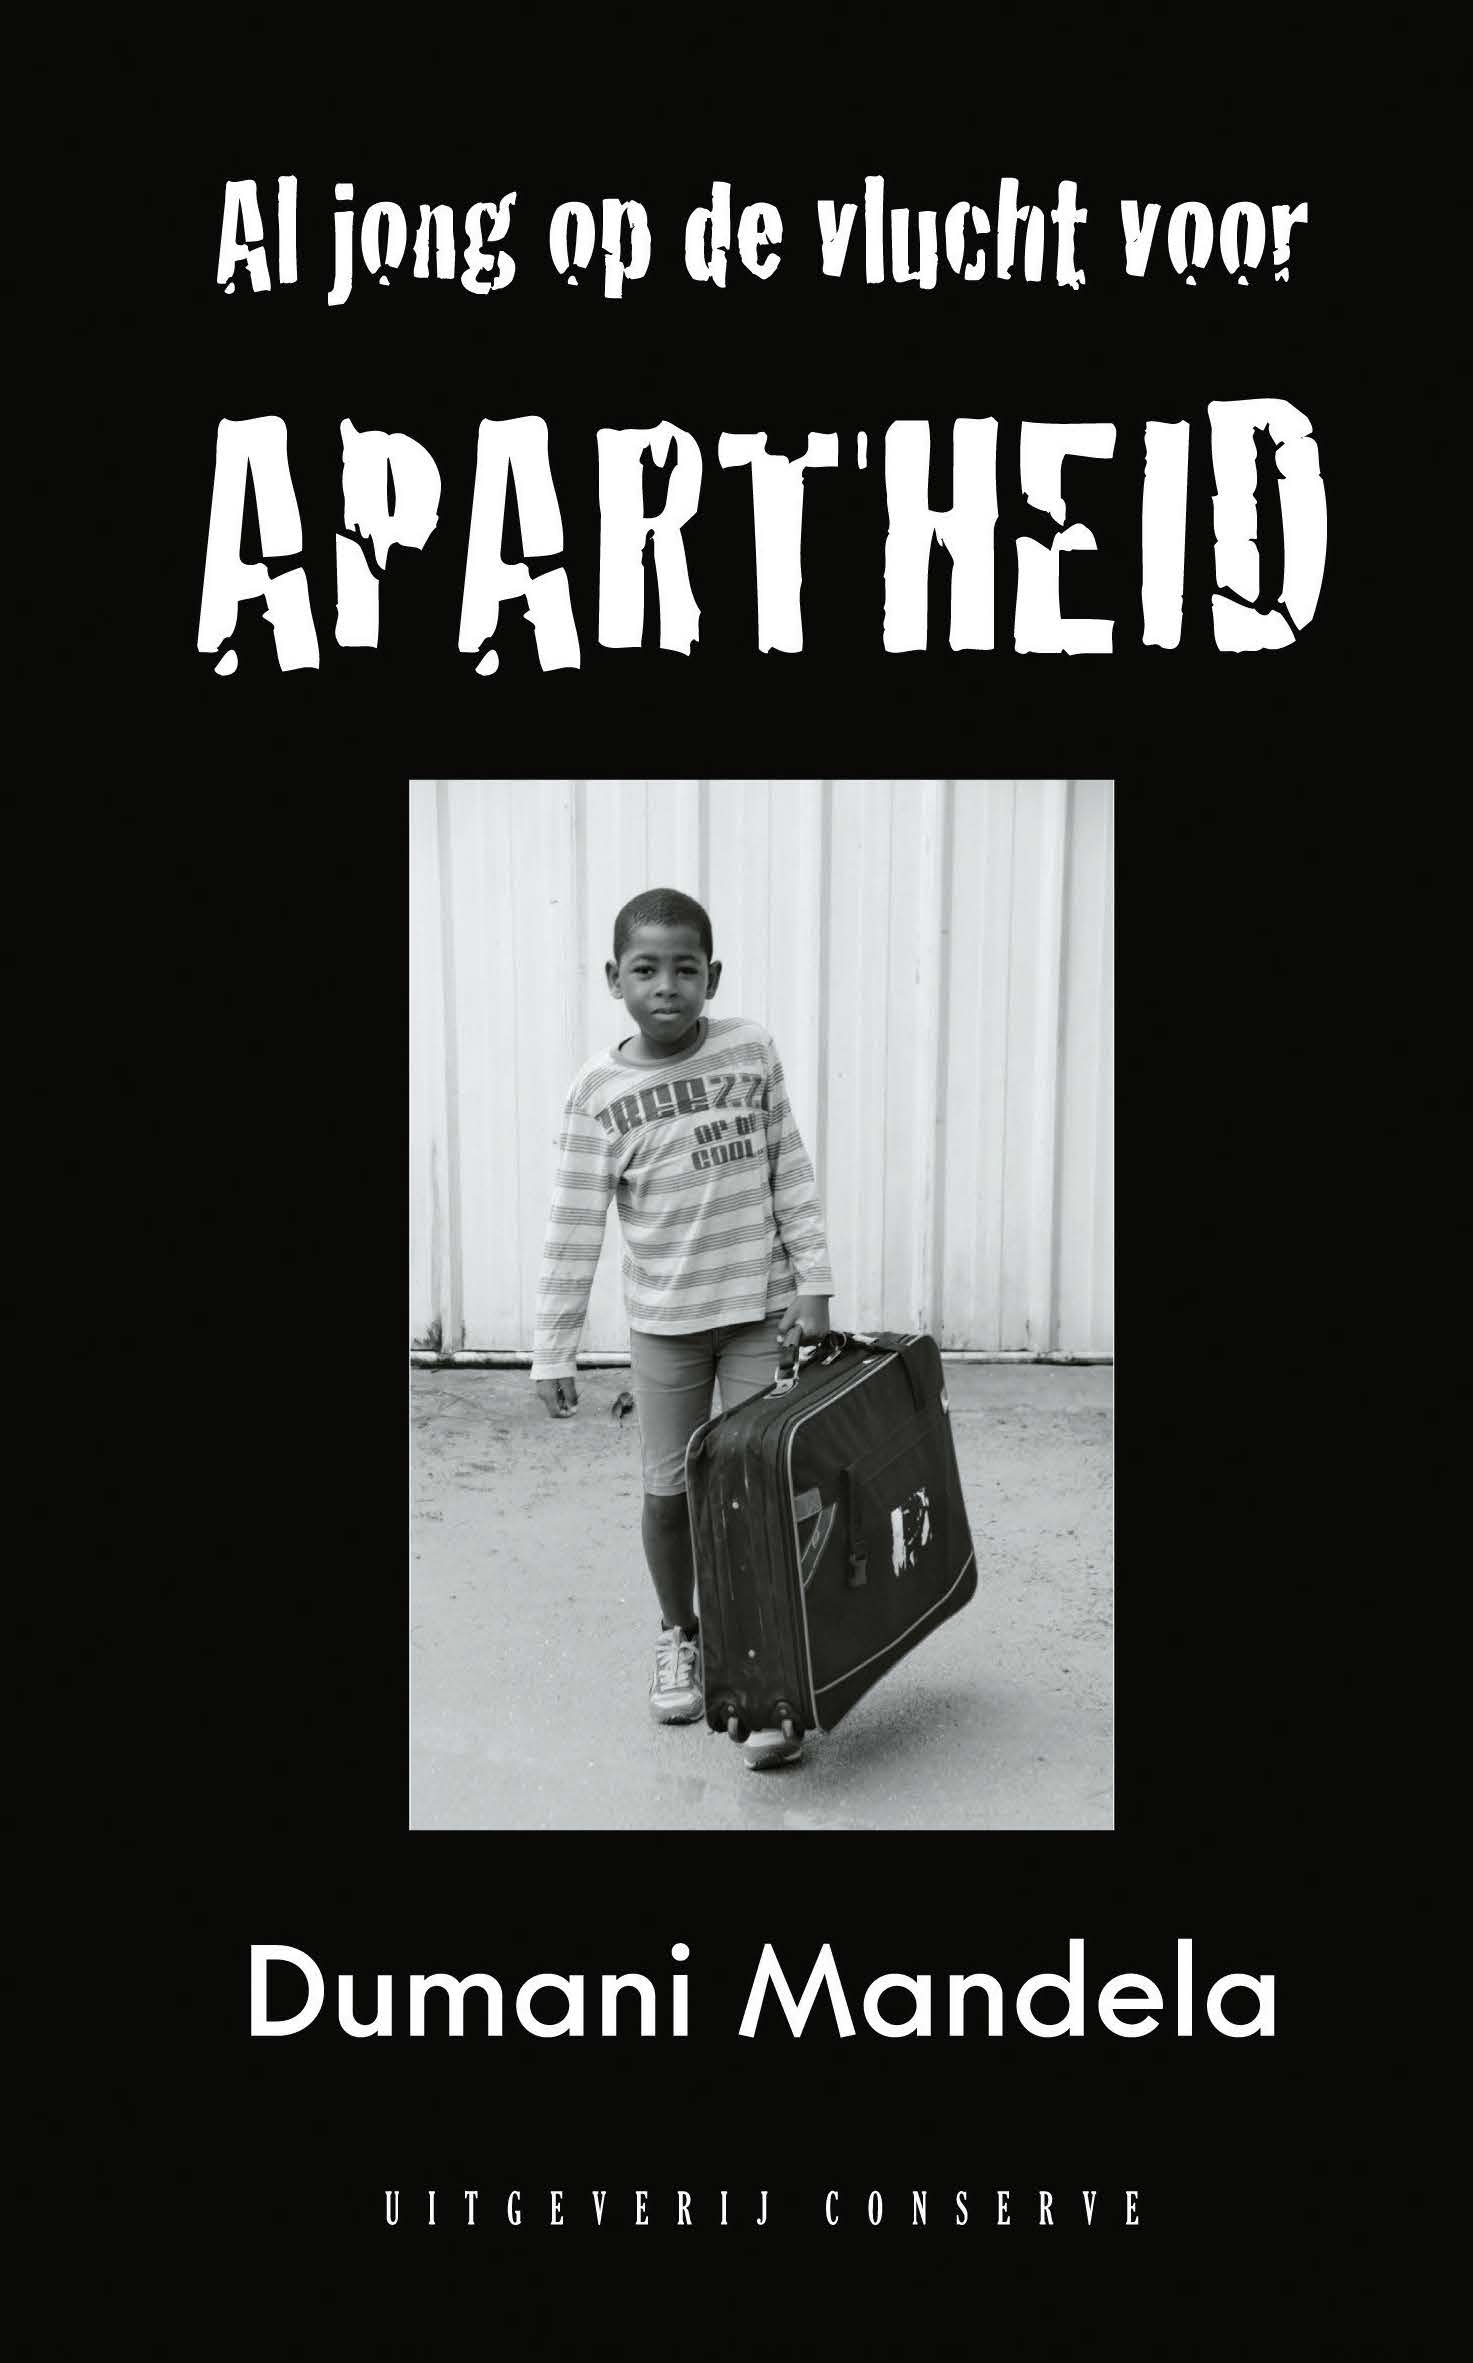 Op de vlucht voor apartheid